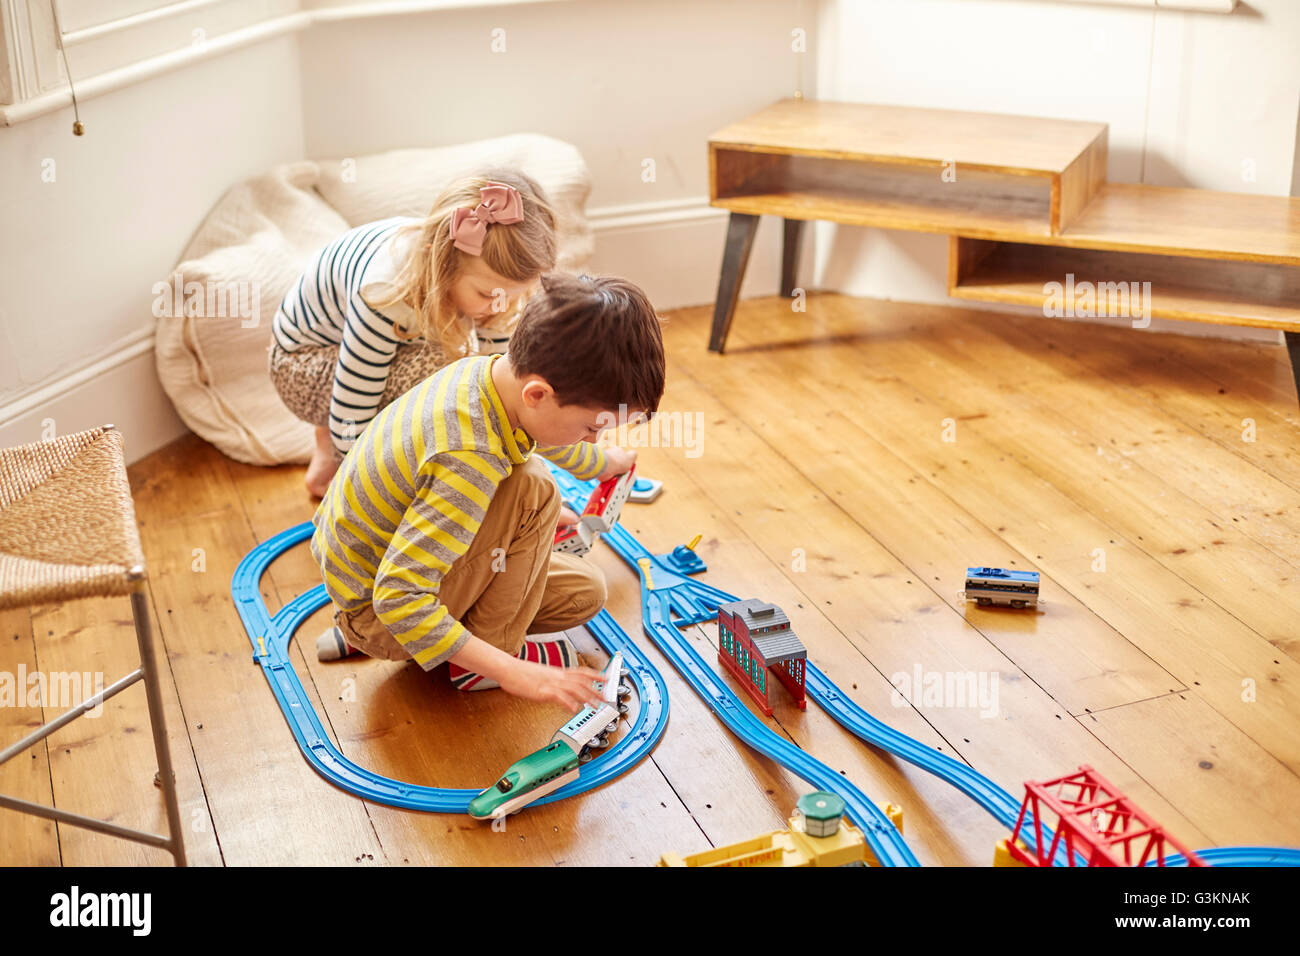 Giovane ragazza e ragazzo giocando con toy train set Foto Stock